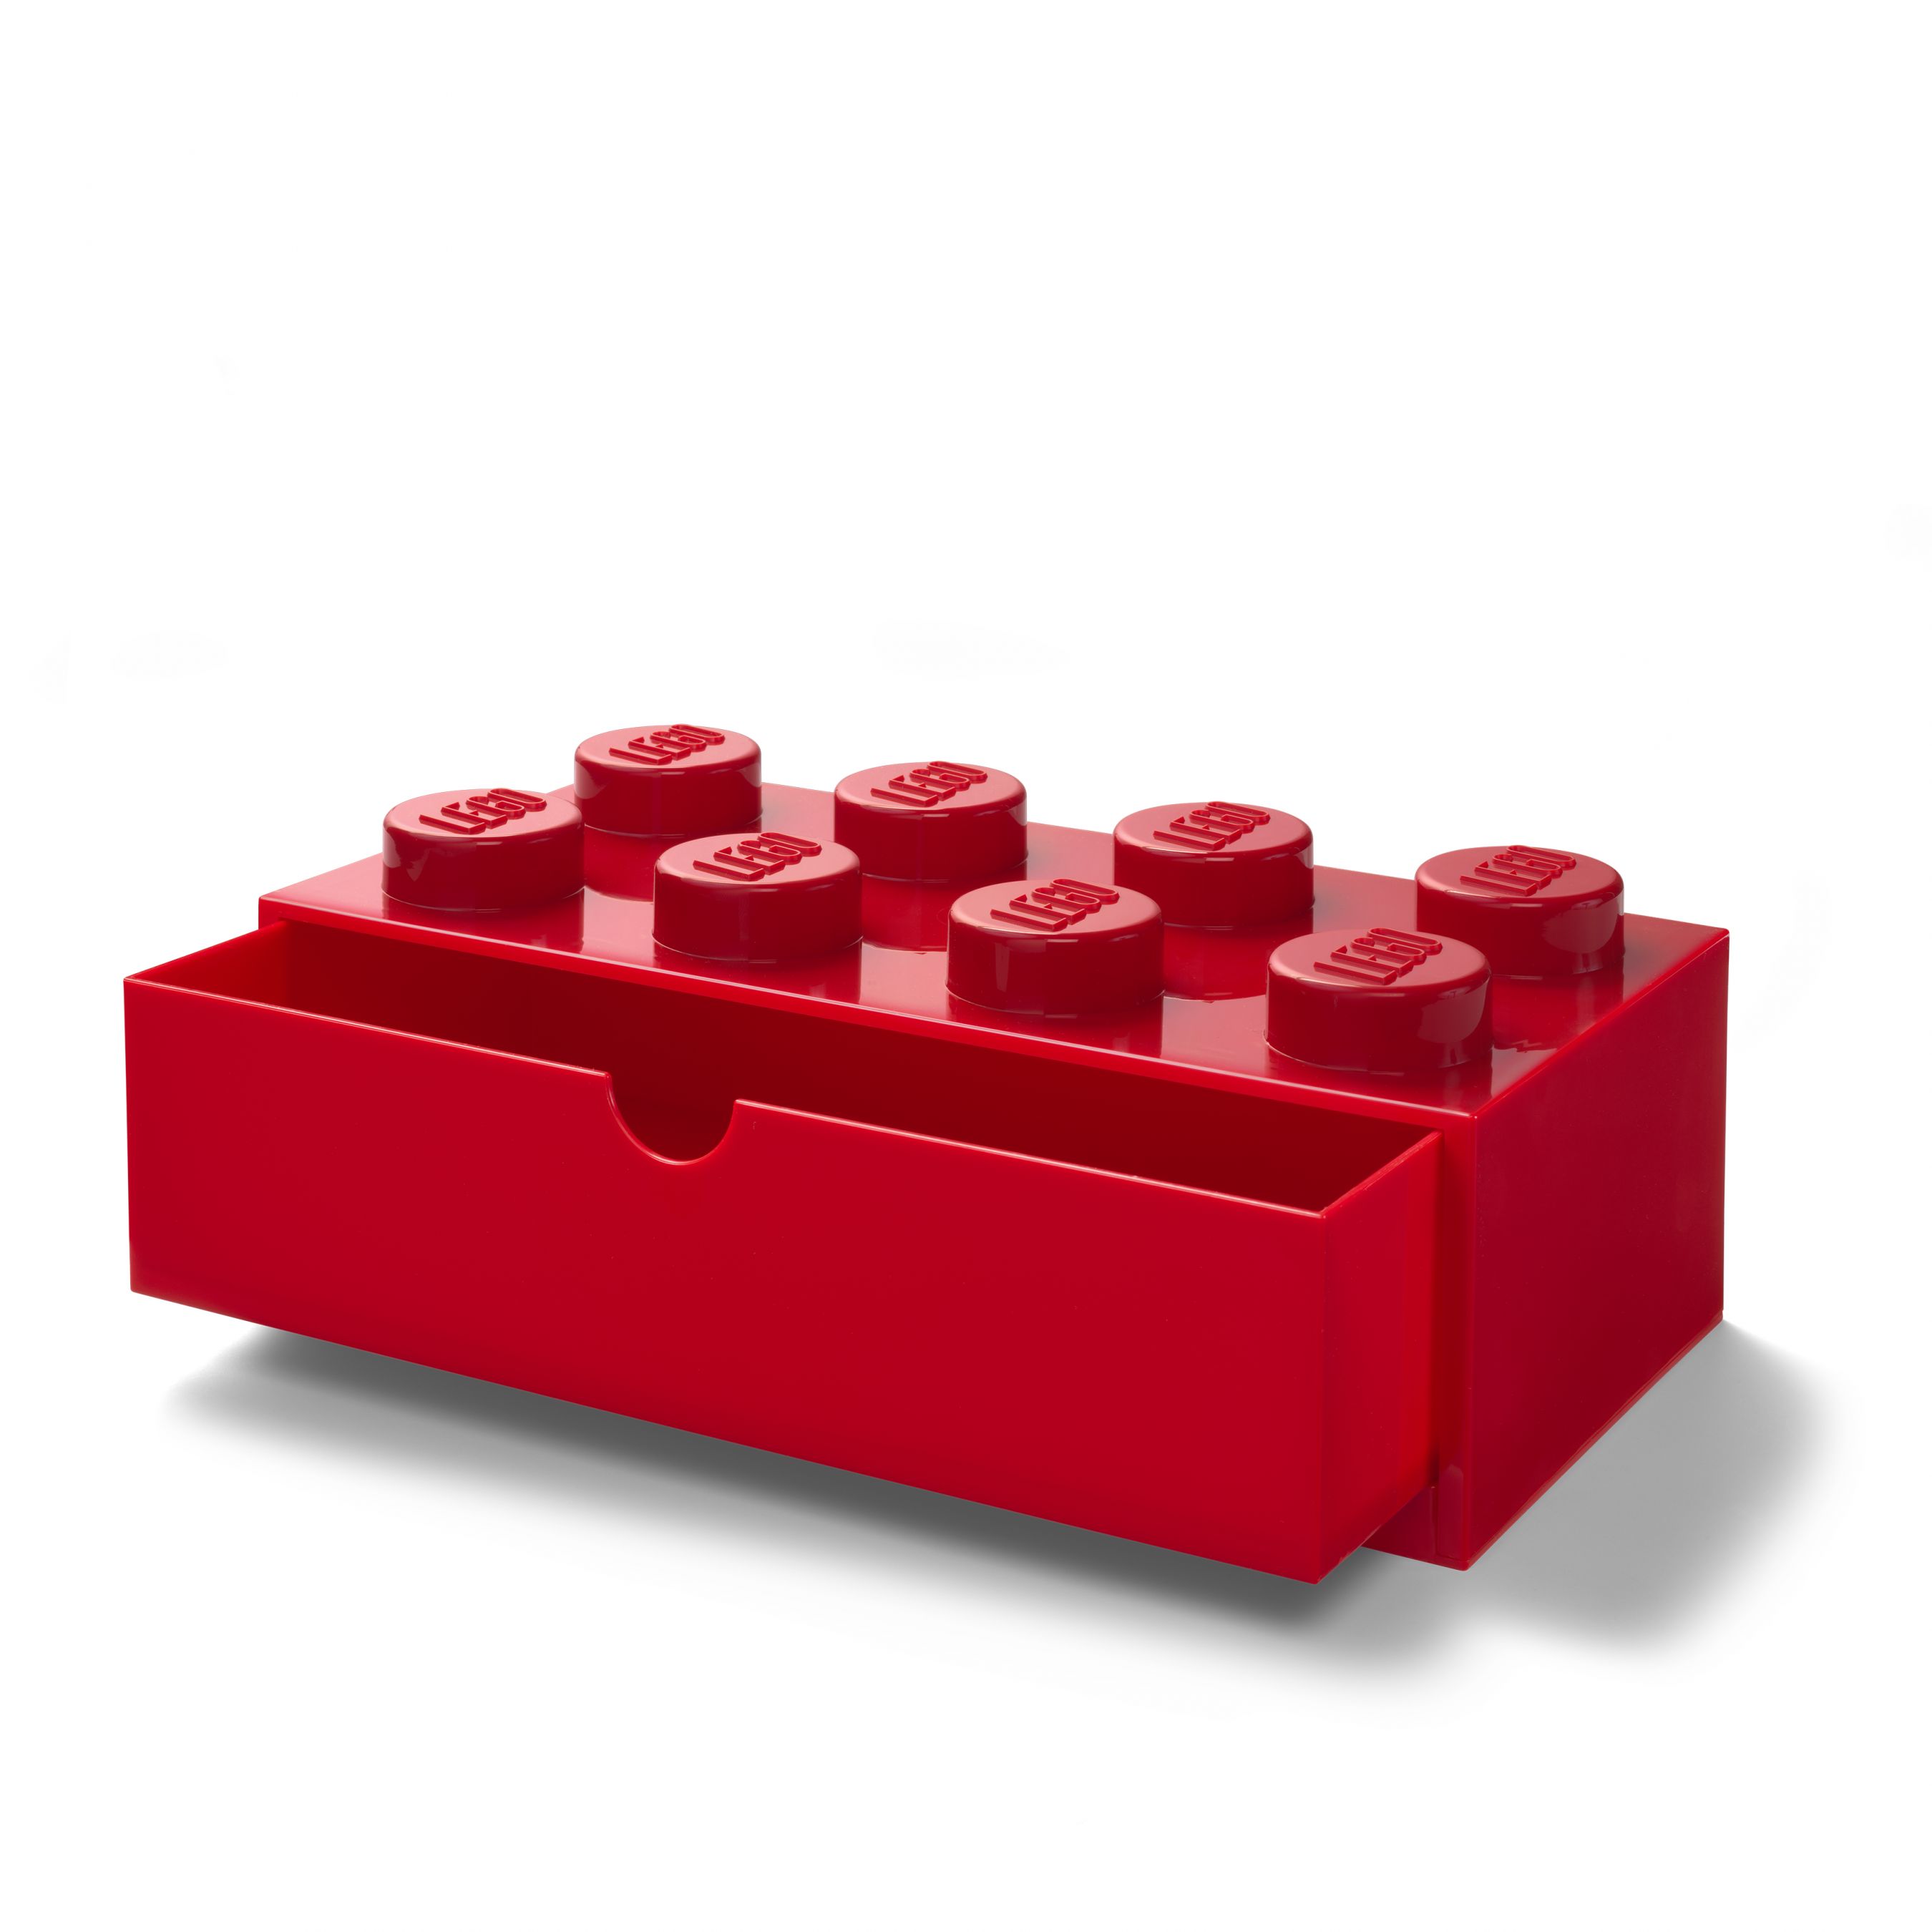 LEGO Gear 5006142 Aufbewahrungsstein mit Schubfach und 8 Noppen in Rot 5006142_LEGO_Desk_Drawer_8_Red_Open.jpg